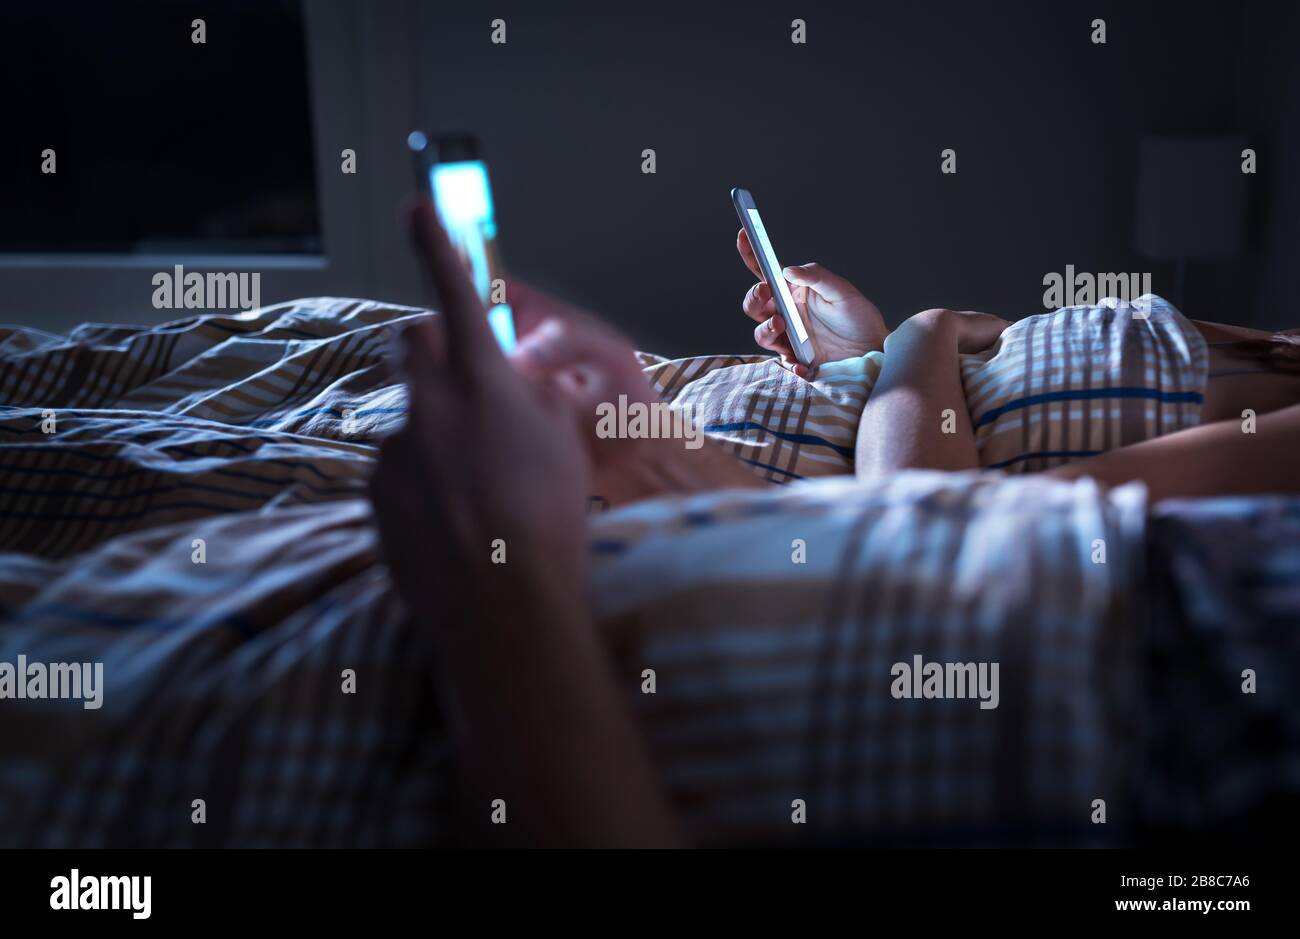 Un couple éloigné s'ennuyé s'ignorant l'un l'autre allongé dans le lit la nuit pendant que l'on utilise des téléphones mobiles. Accro au smartphone. Homme et femme obsédés et distraits. Banque D'Images